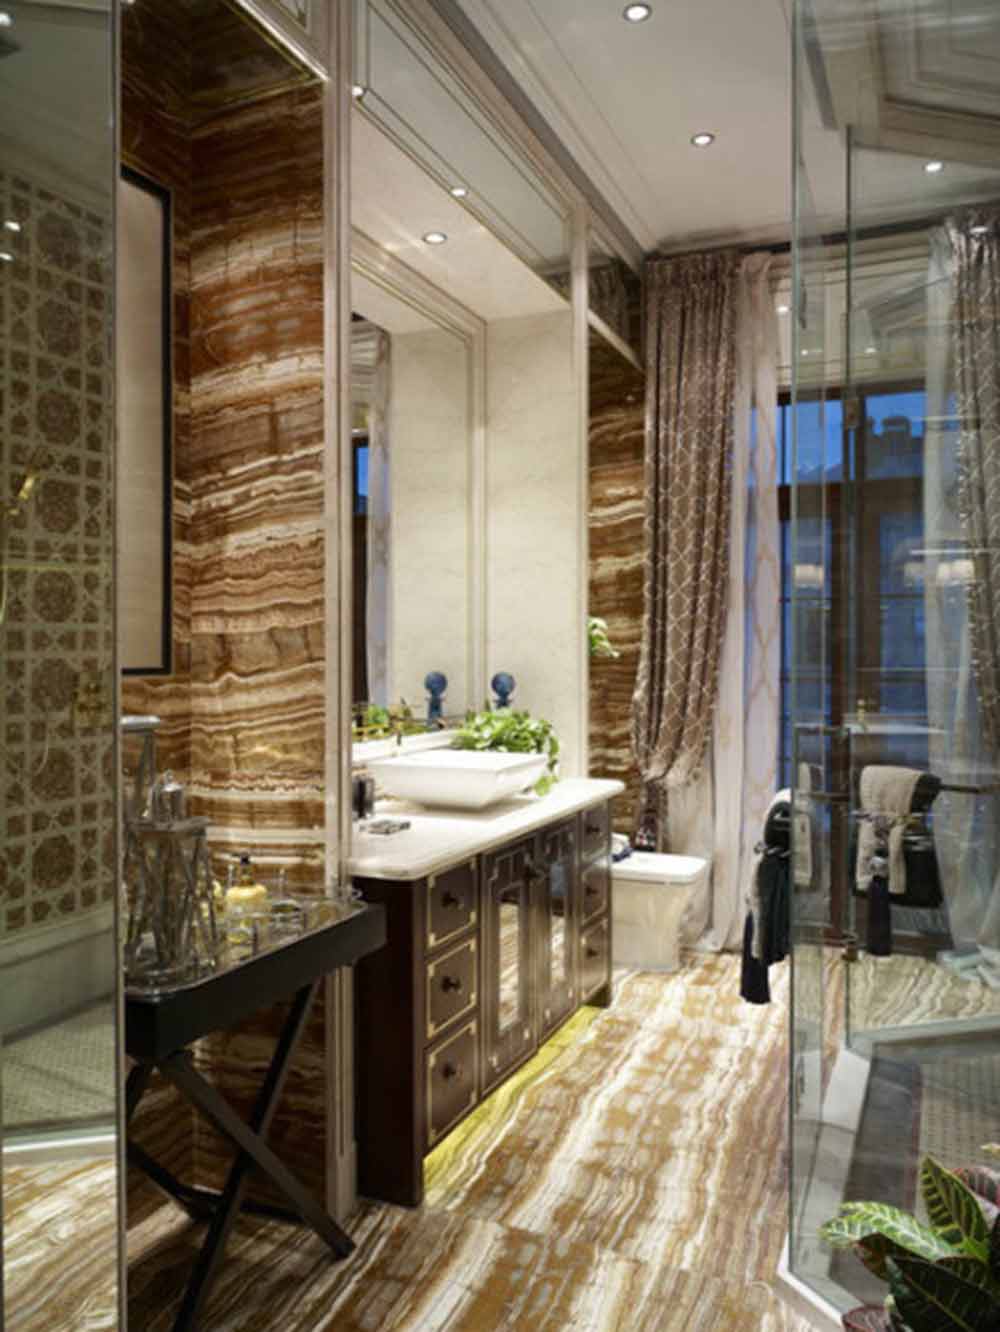 瓷砖天然随机的波纹为小小的卫生间增加了流动感和设计感。细节处，浴室柜的设计与卧室床头柜遥相呼应，而墙壁、窗帘的花纹又与整体的中式风格完美对应了起来。